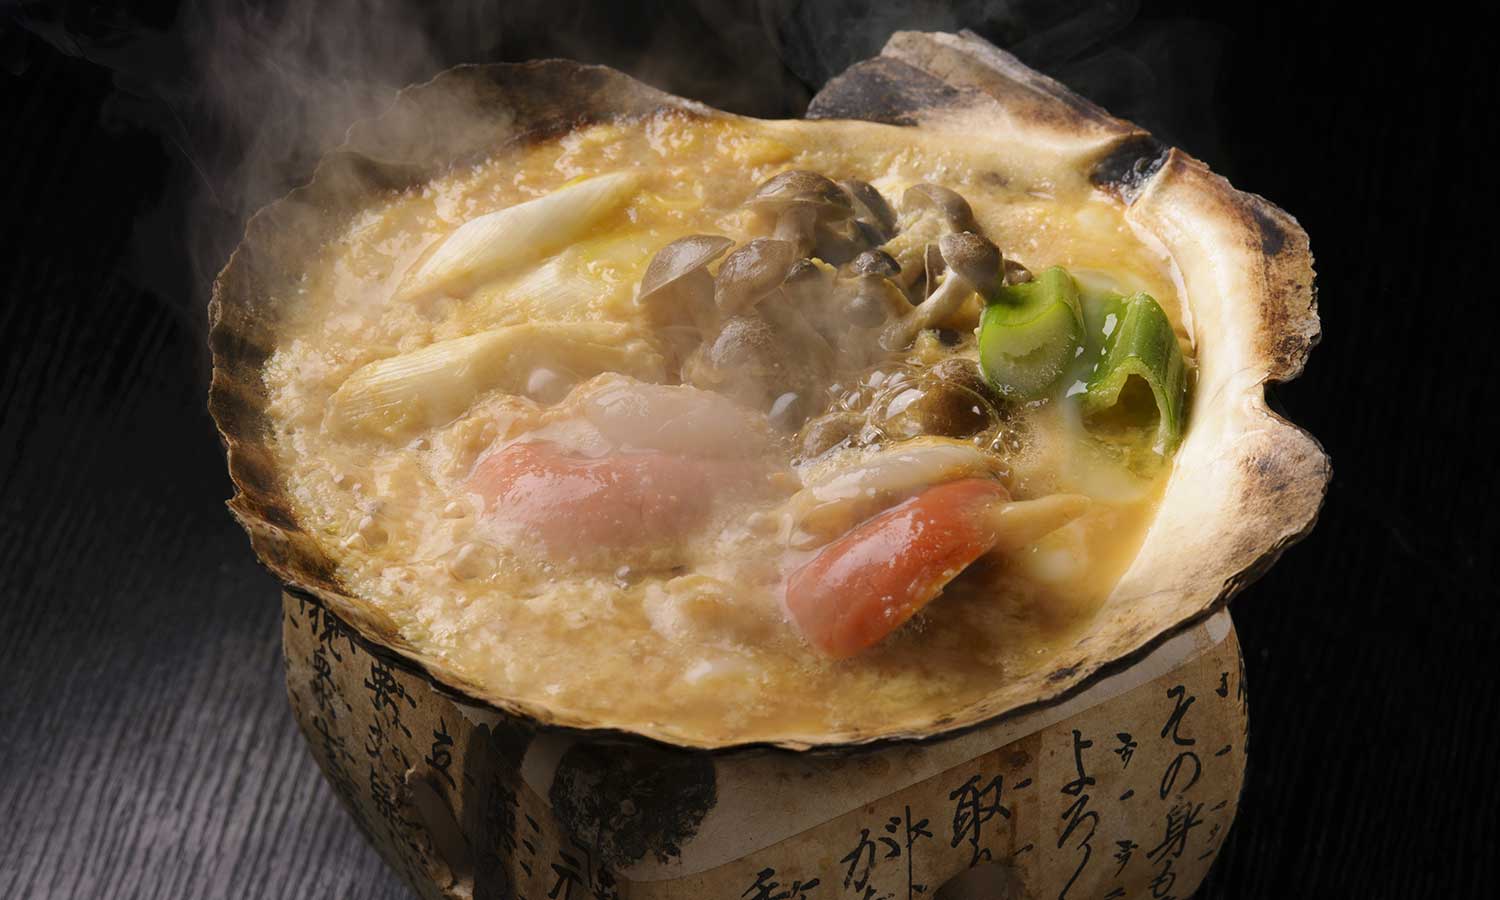 青森の郷土料理・津軽地方では貝焼き味噌と呼ばれる